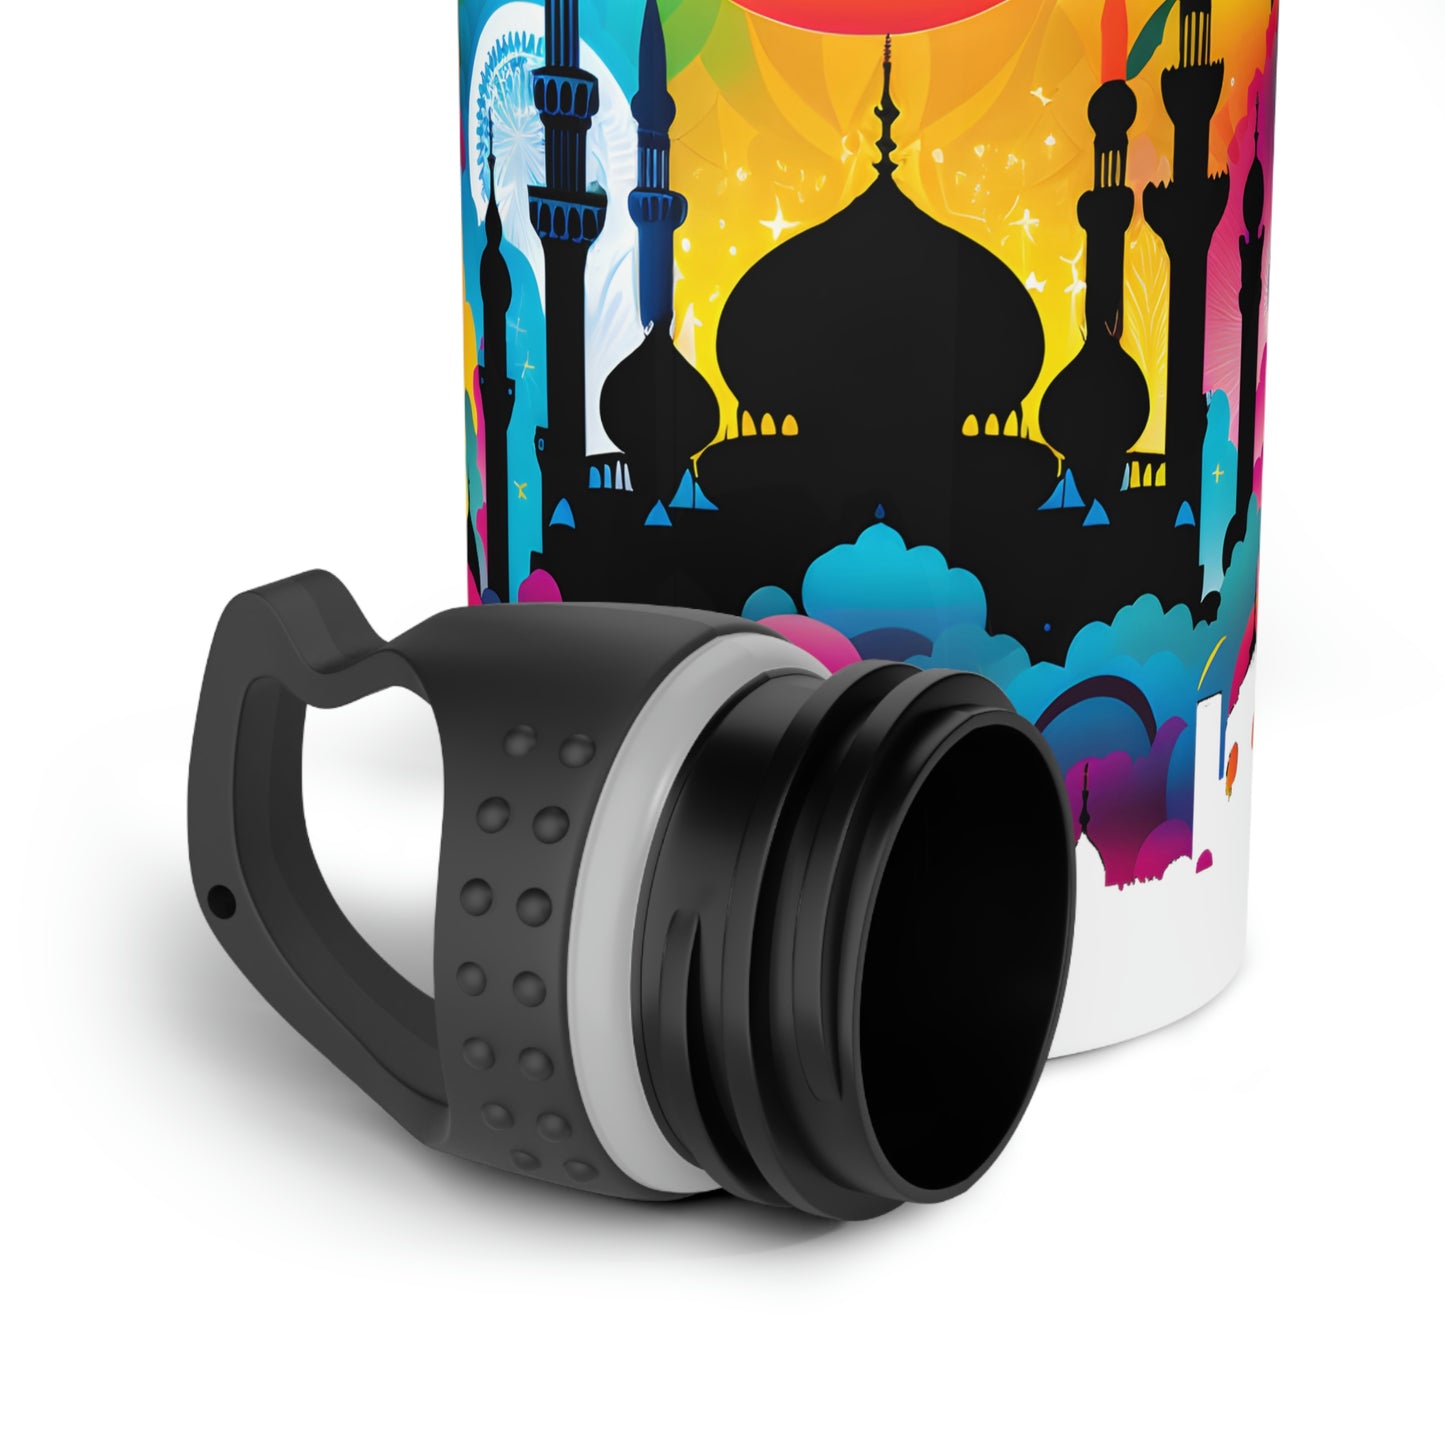 Neon Dream Scape Islamic Theme Stainless Steel Water Bottle Mosque Ramadan Hajj Islamic Gifts 20oZ bottle